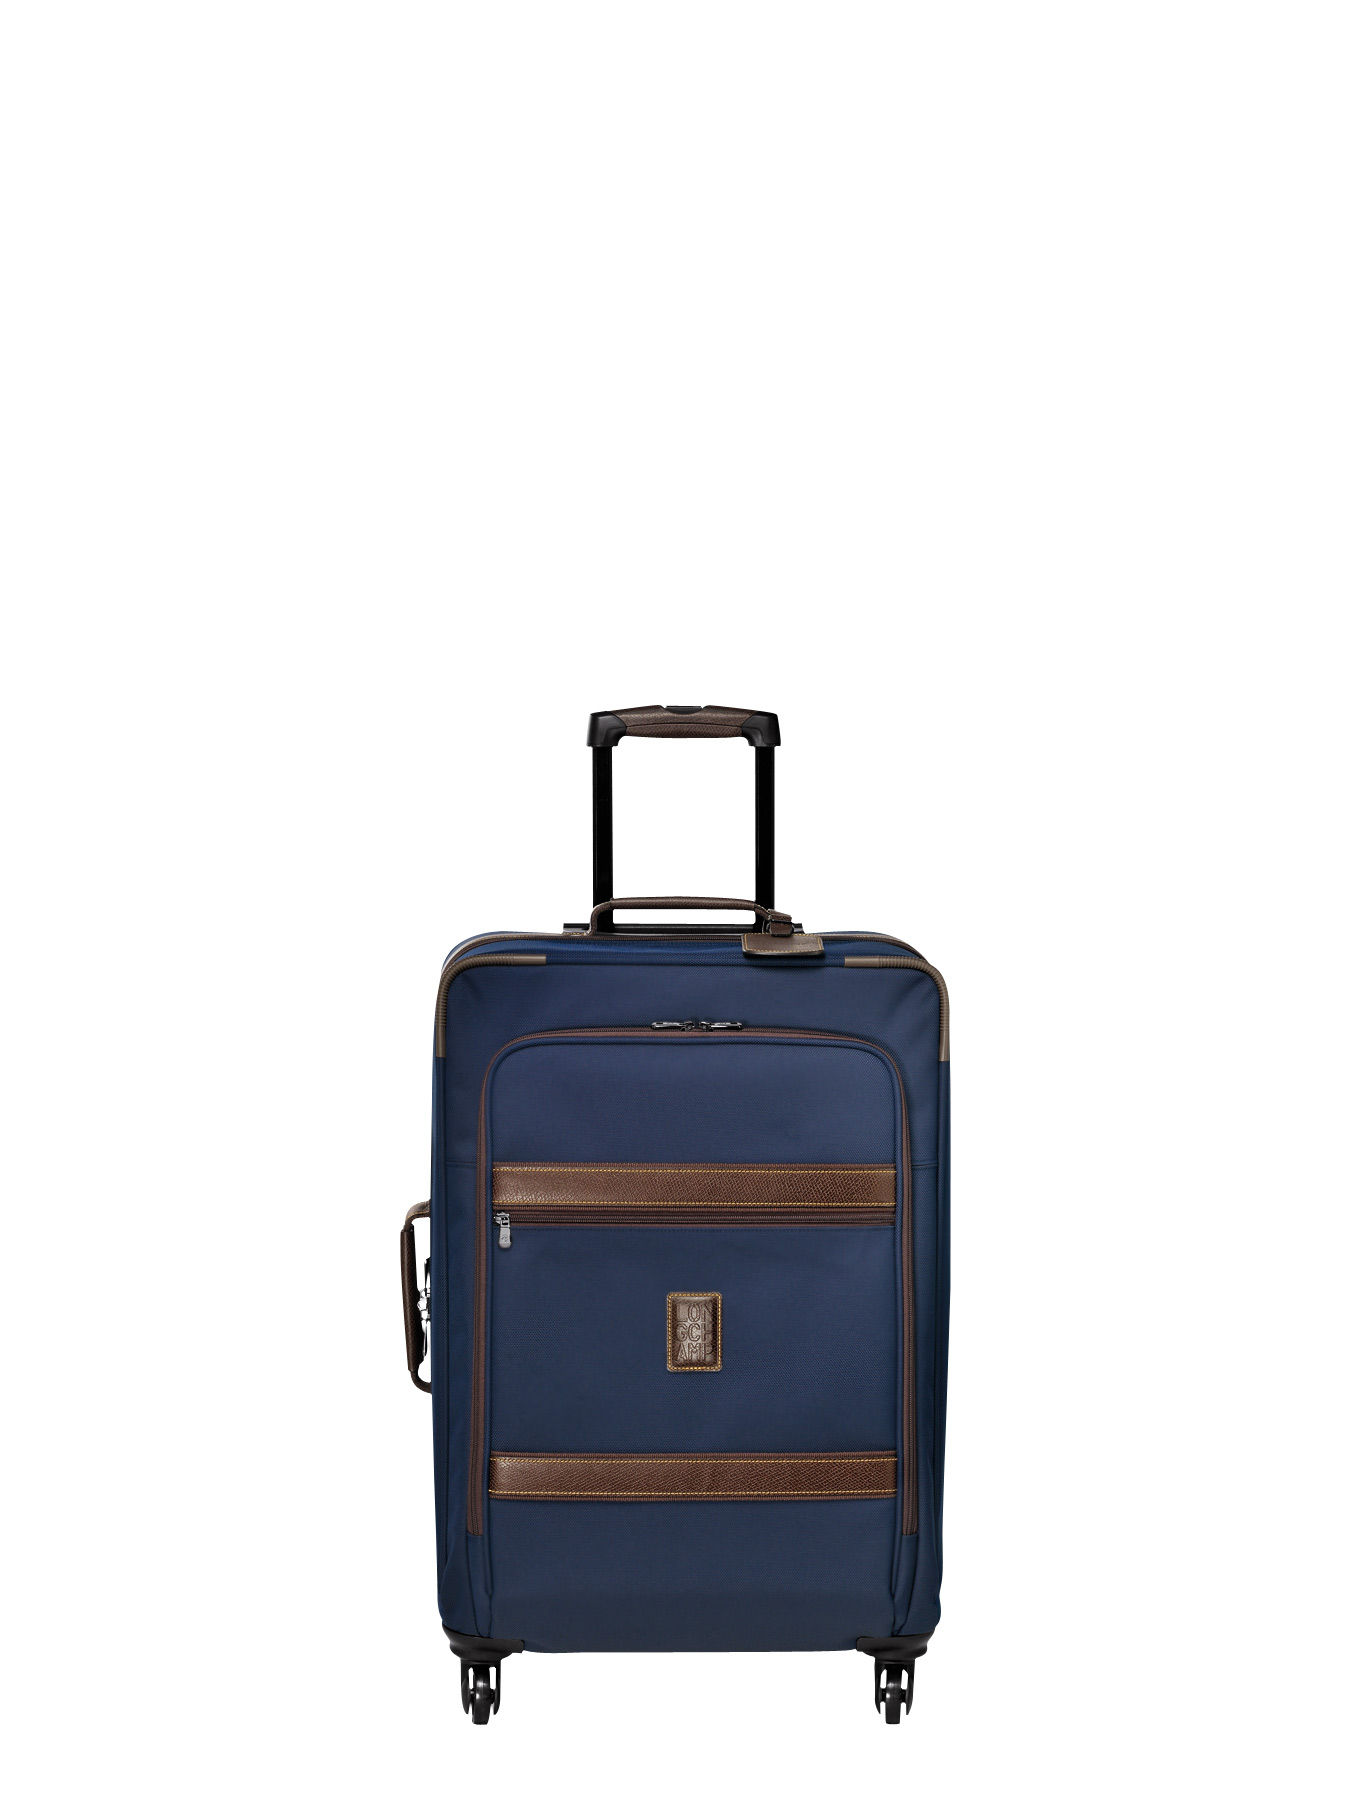 longchamps luggage